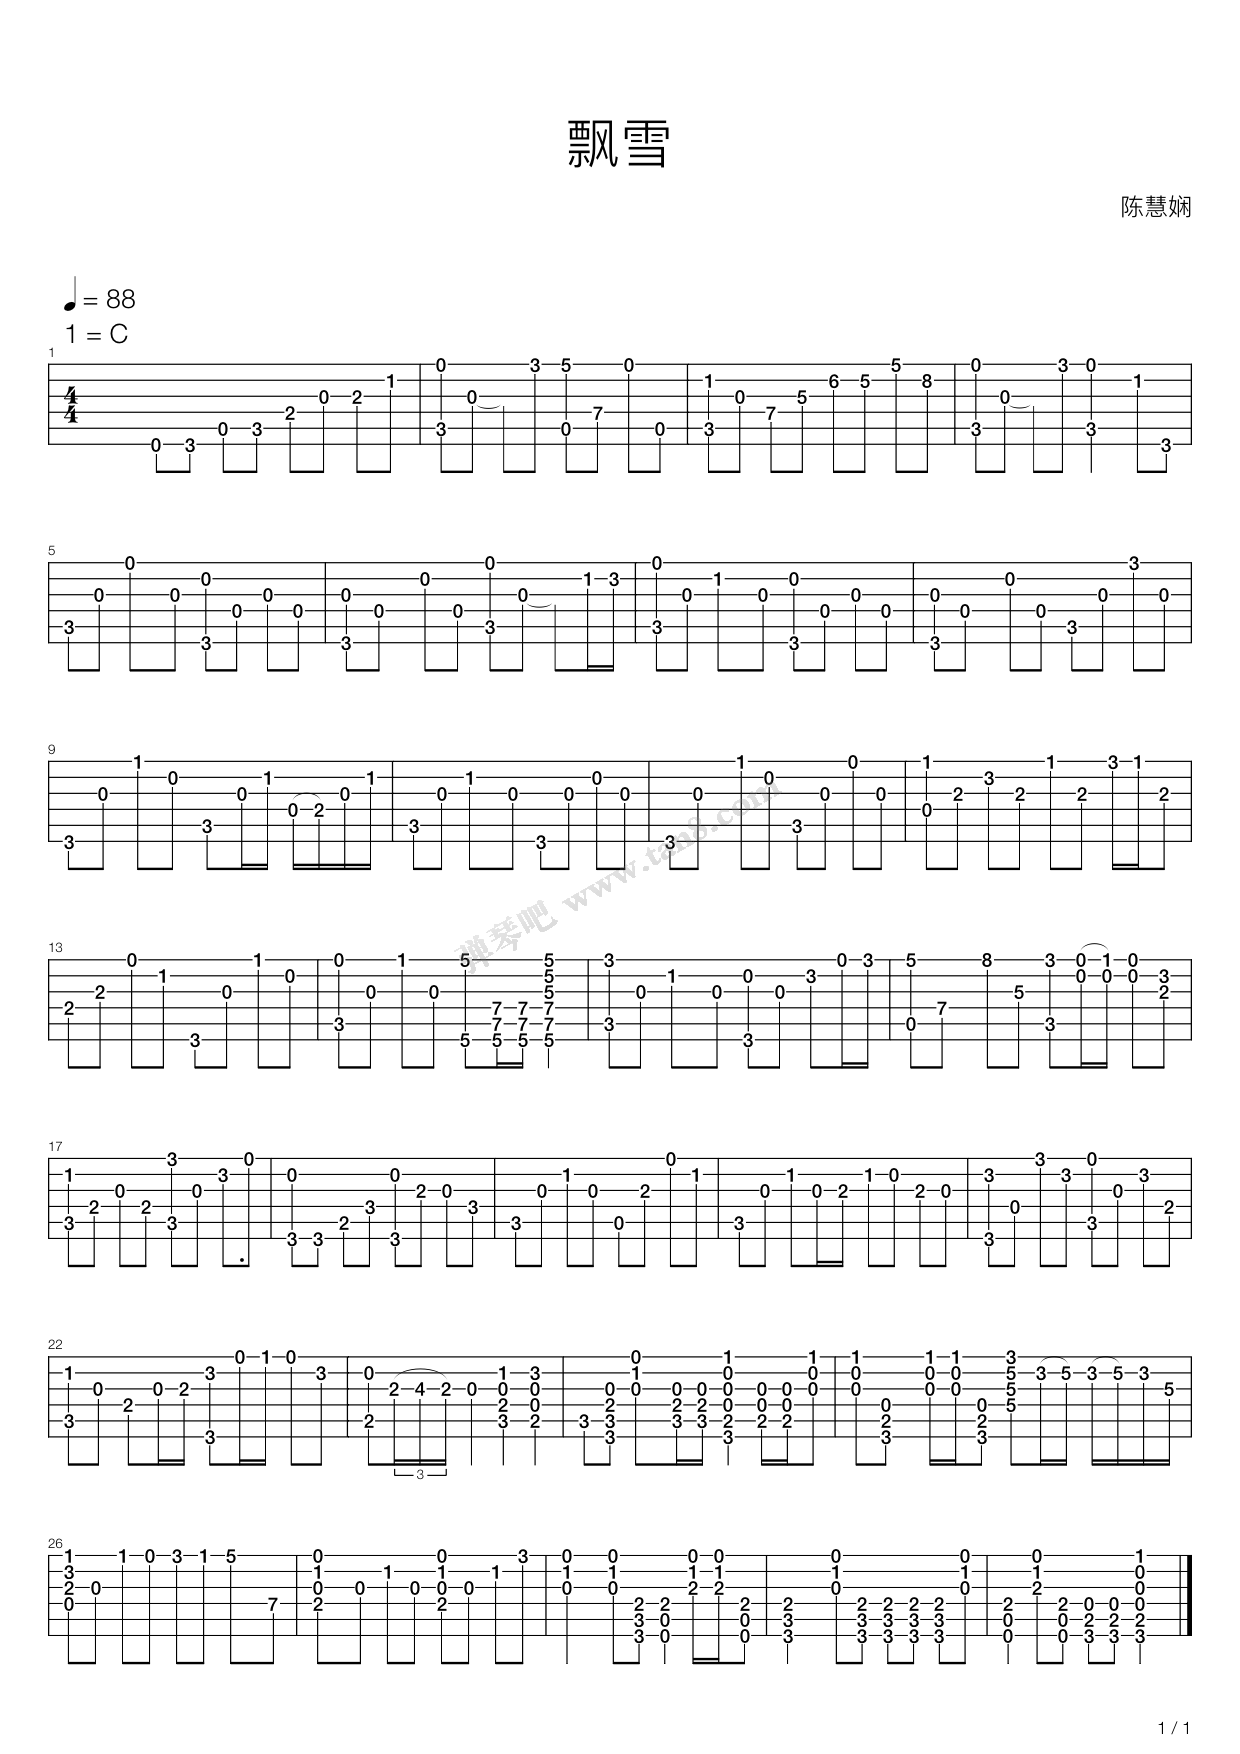 简单版飘雪弹唱版钢琴谱 - 韩雪0基础完整版钢琴伴奏 - 柱式分解和弦伴奏 - 易谱库